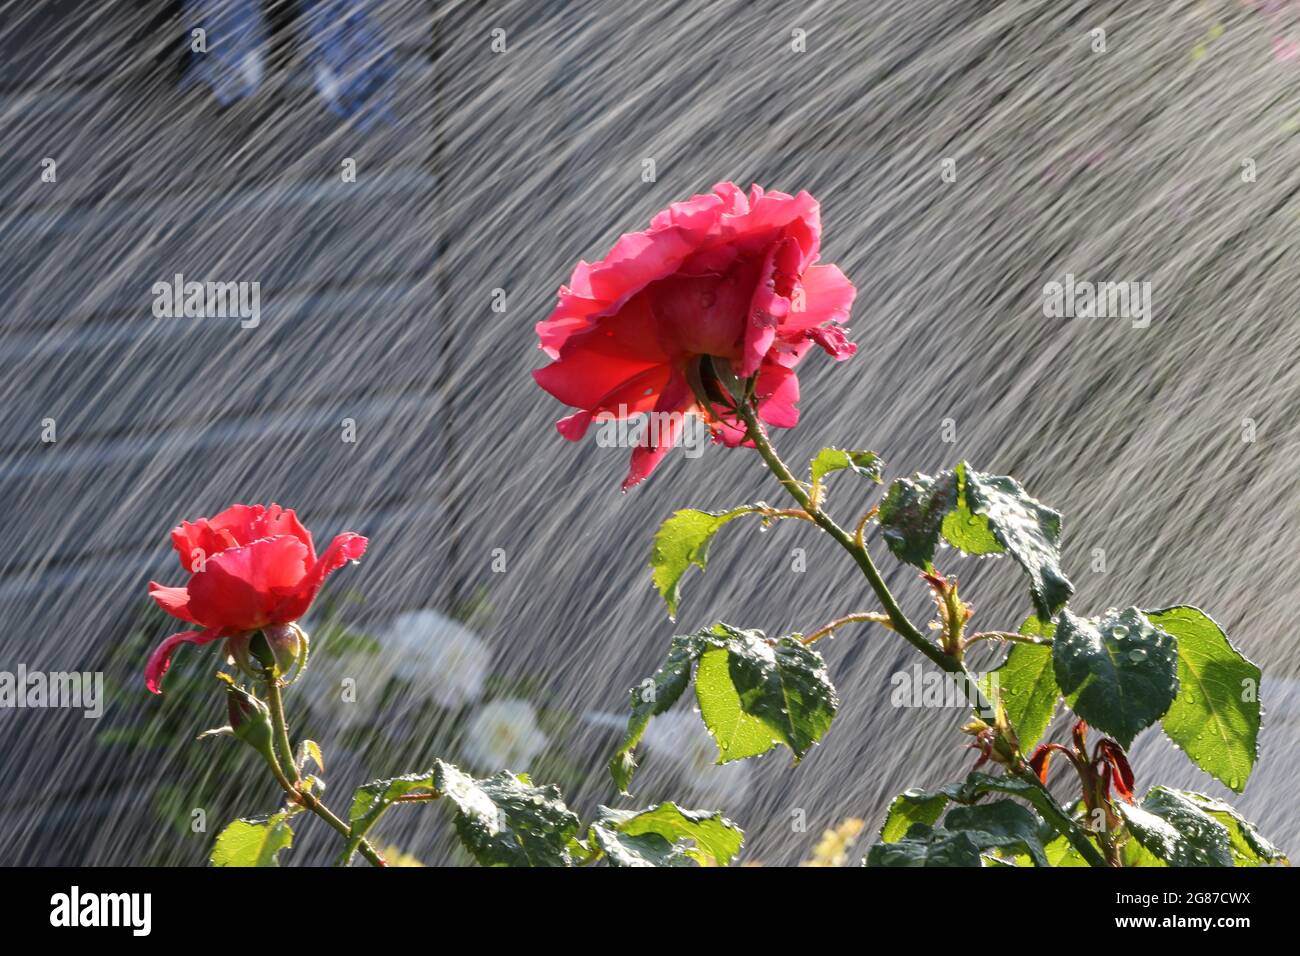 Roses arrosées dans un jardin intérieur, Ayrshire, Écosse, Royaume-Uni.Les gouttelettes d'eau qui atterrissent sur les roses rouges imitent la pluie et le mouvement Banque D'Images